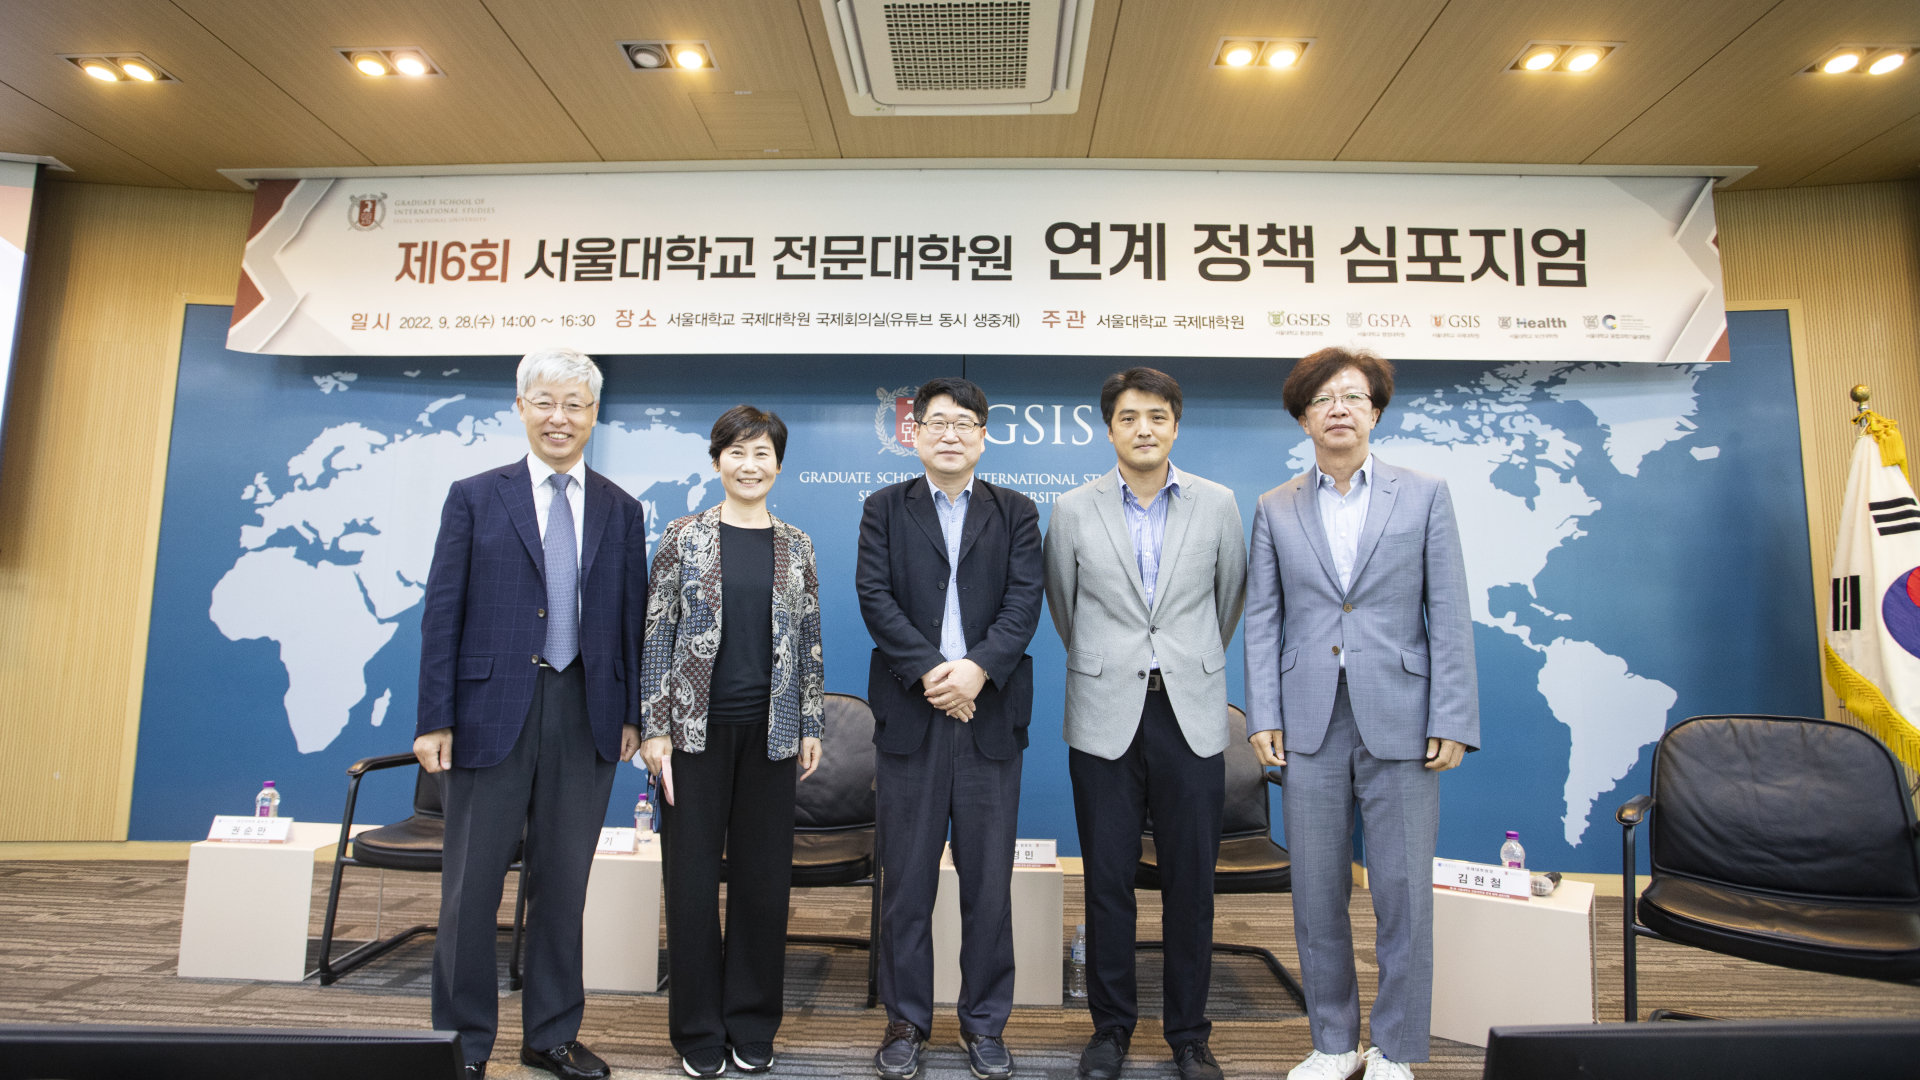 제6회 서울대학교 전문대학원 연계 정책 심포지엄